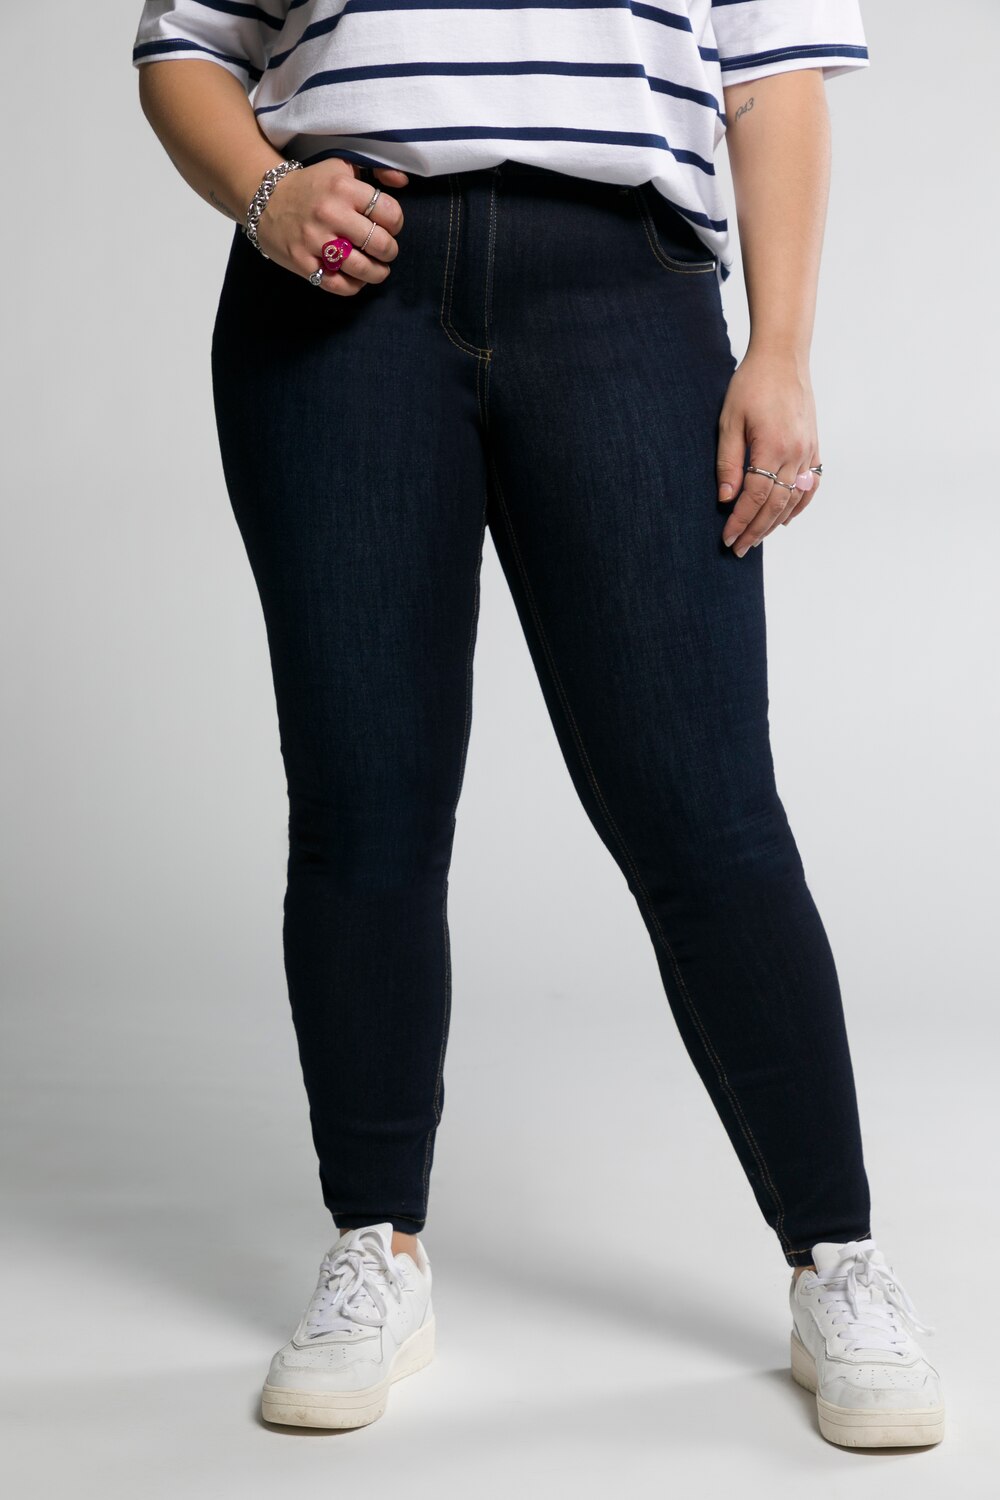 Grote Maten jeans, Dames, blauw, Maat: 46, Katoen/Polyester, Studio Untold